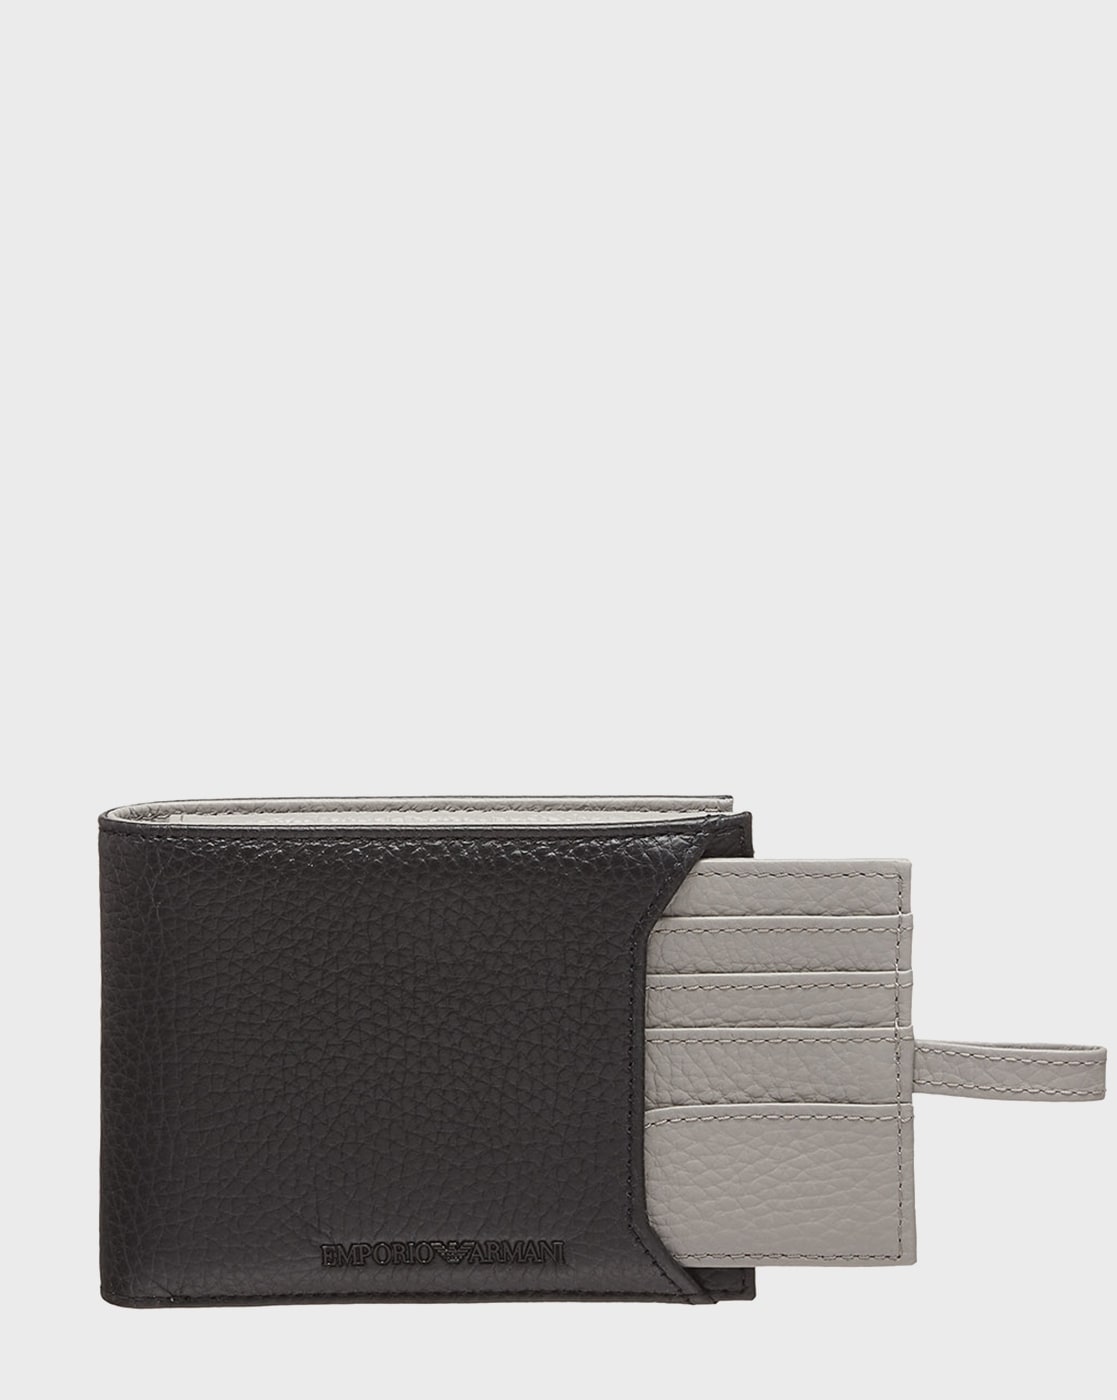 ARMANI EXCHANGE Outlet: Bags men - Black | ARMANI EXCHANGE shoulder bag  9584593R840 online at GIGLIO.COM